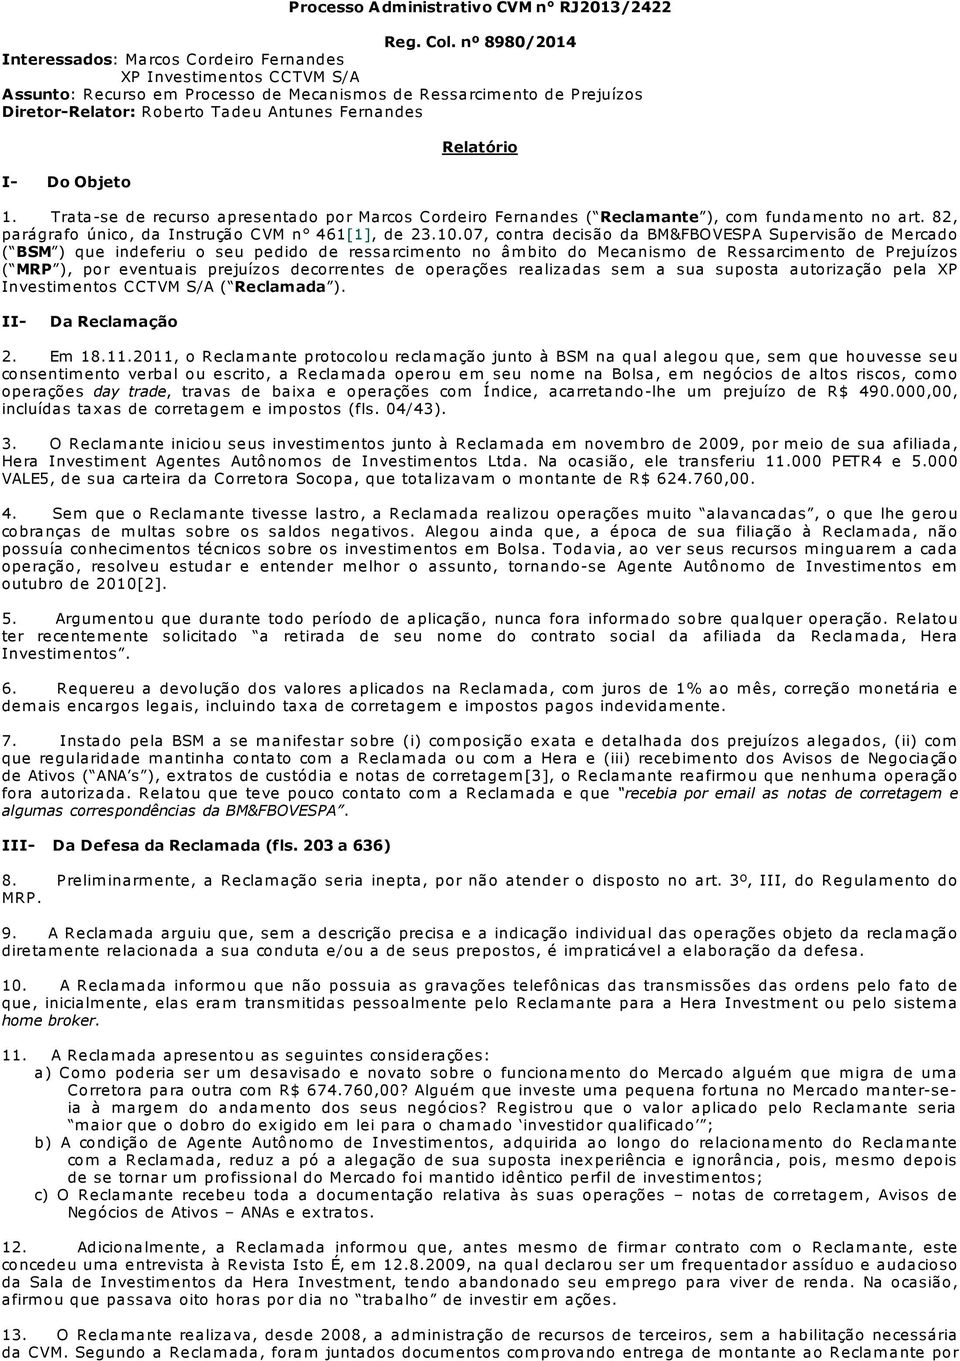 Fernandes I- Do Objeto Relatório 1. Trata-se de recurso apresentado por Marcos Cordeiro Fernandes ( Reclamante ), com fundam ento no art. 82, parágrafo único, da Instrução CVM n 461[1], de 23.10.